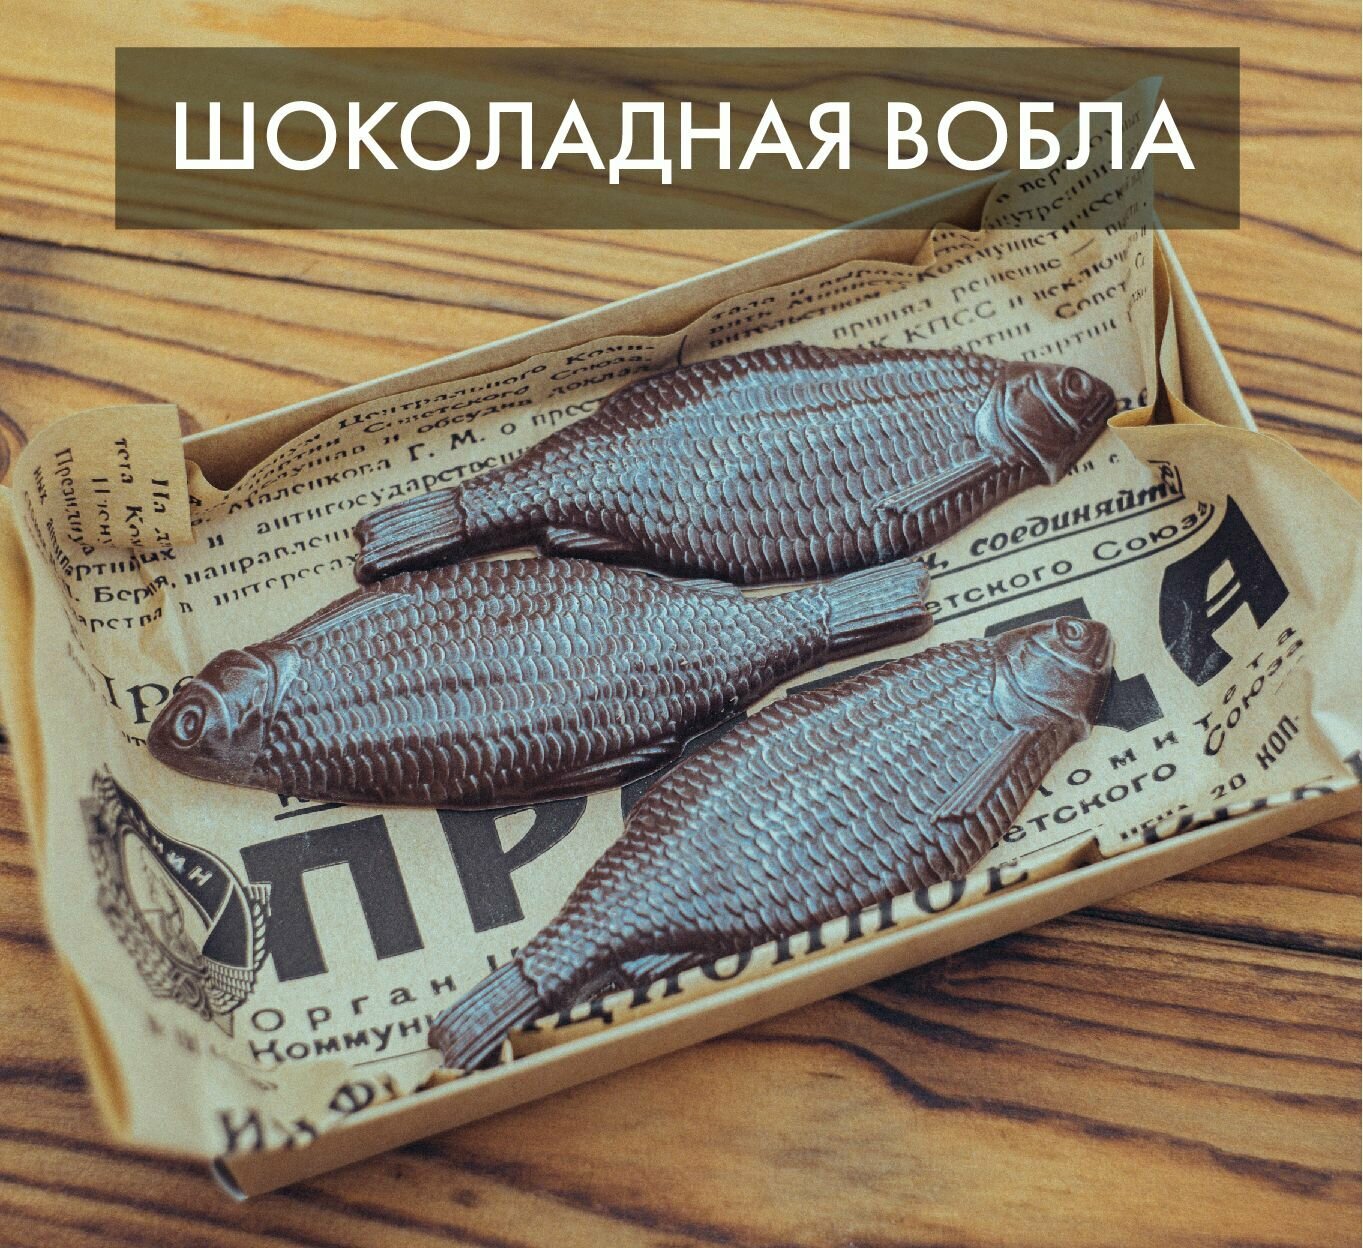 Шоколадная рыба, вобла из бельгийского шоколада, подарок на 23 февраля, 3шт в наборе